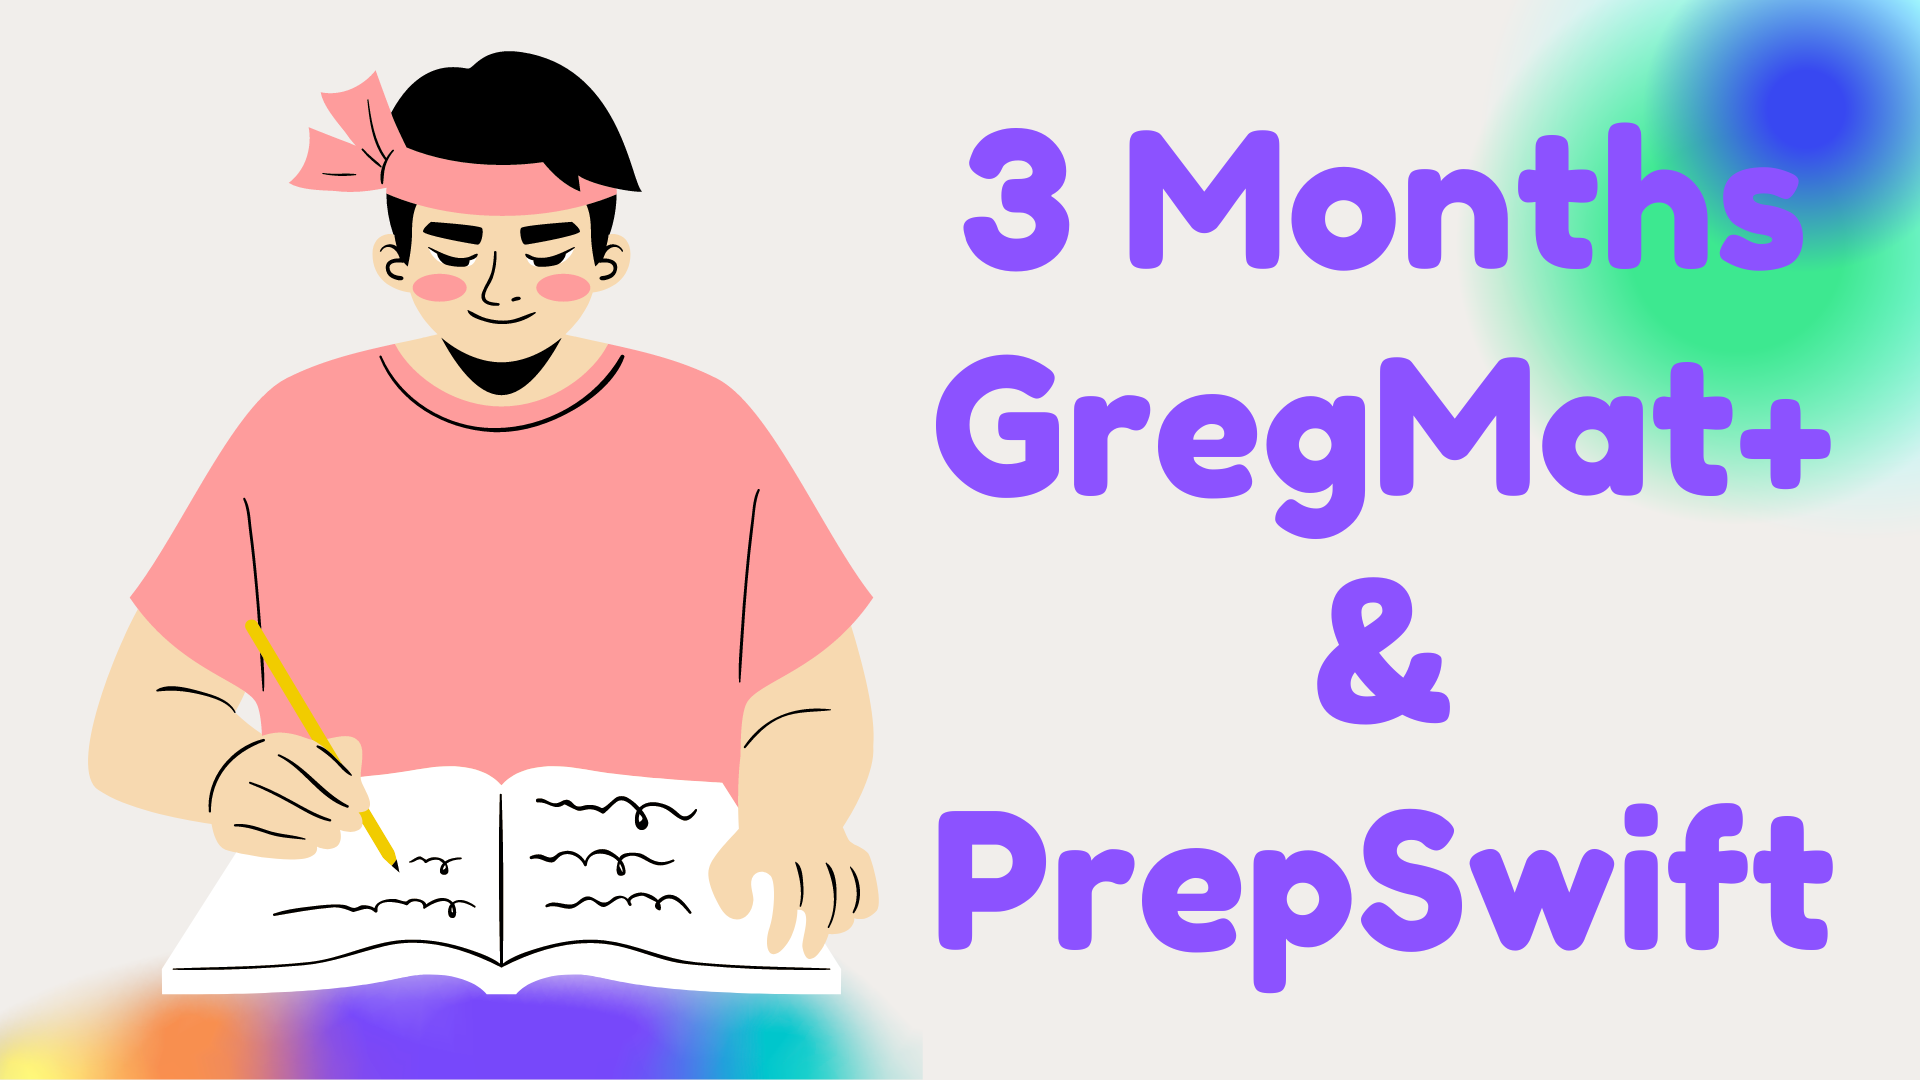 3 Months Greg Mat+ and PrepSwift